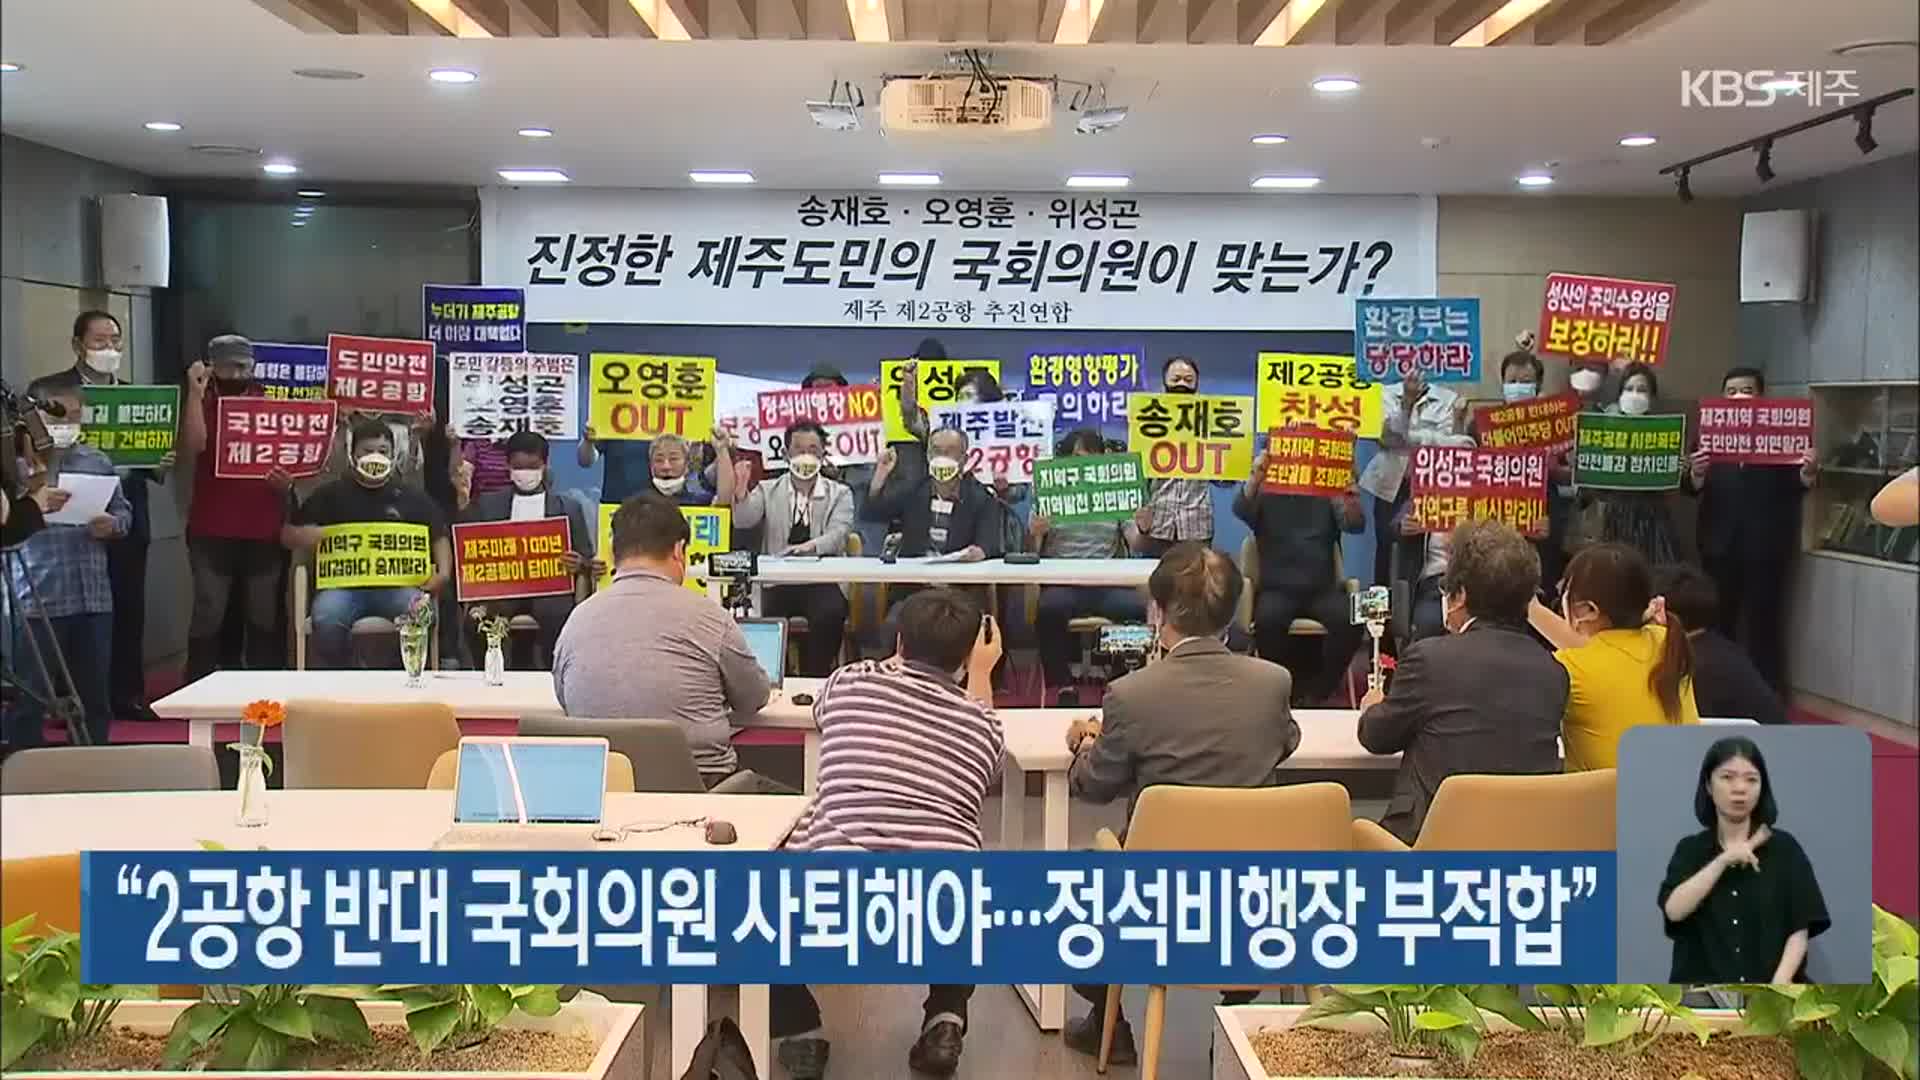 “2공항 반대 국회의원 사퇴해야…정석비행장 부적합”